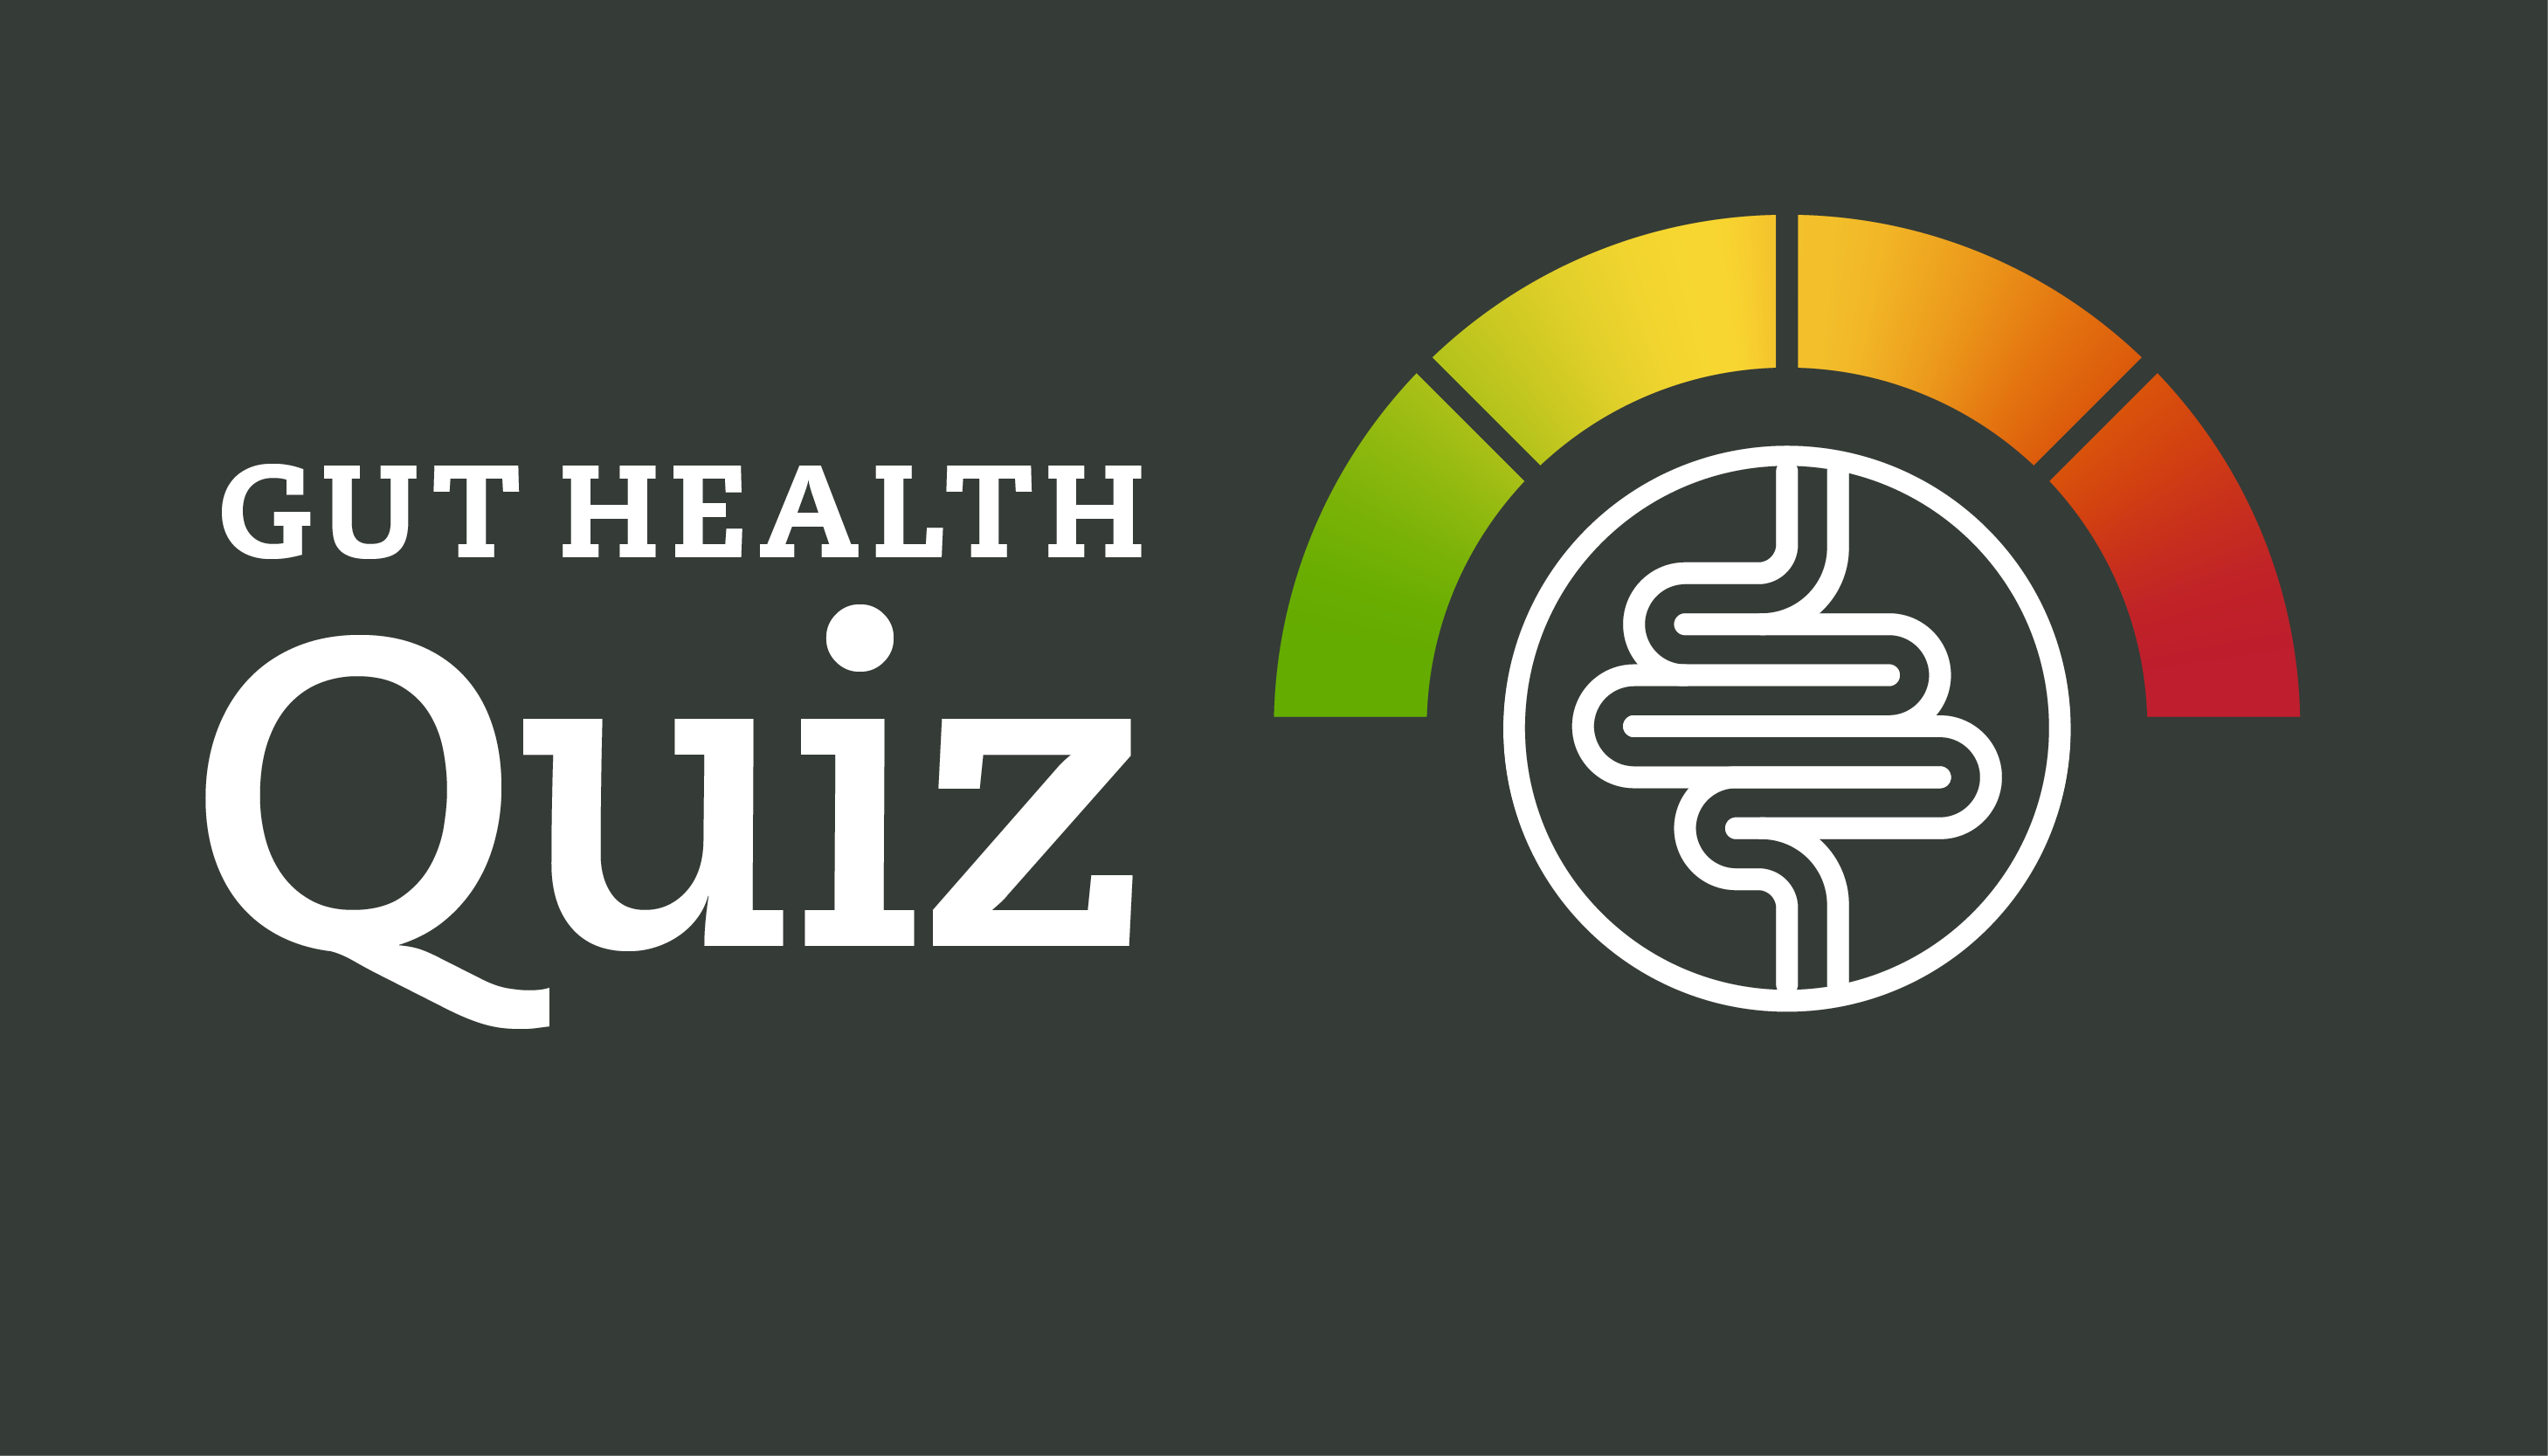 Gut Health Quiz